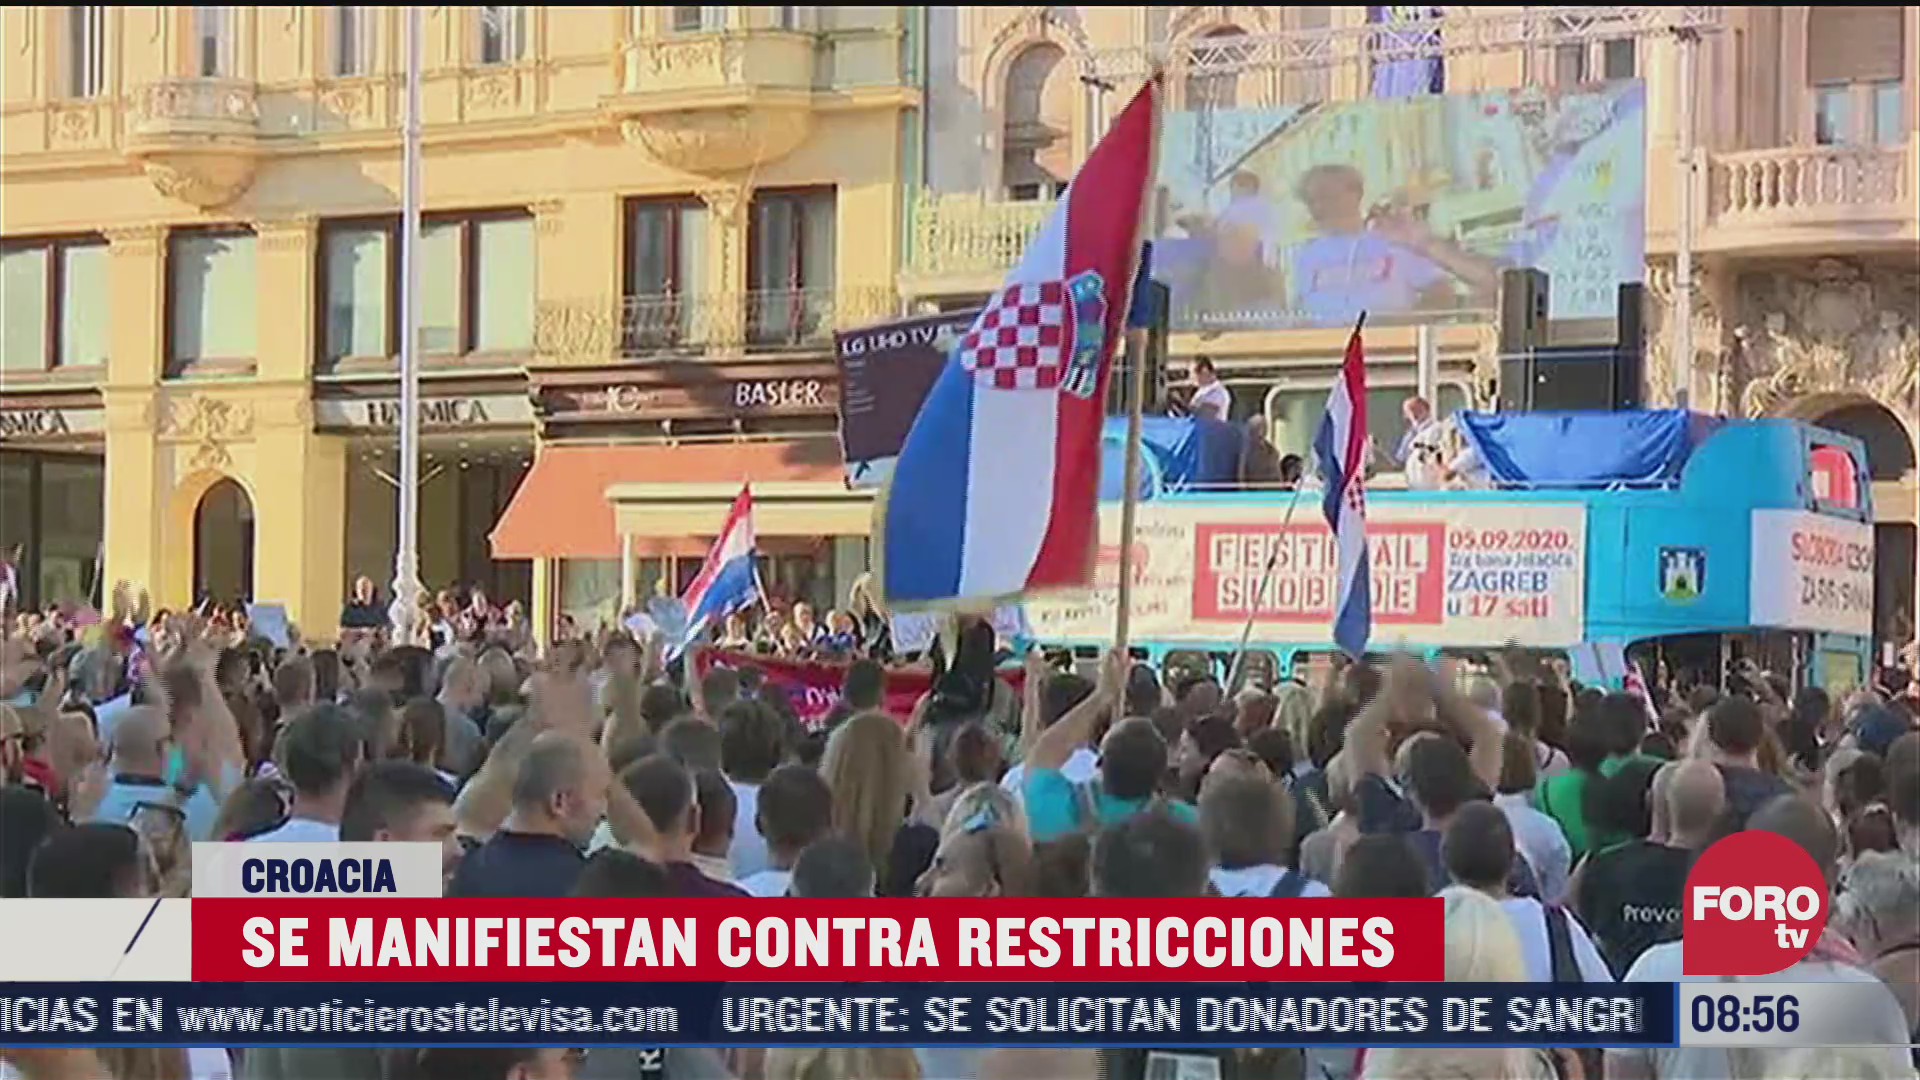 protestan bailando contra restricciones por covid 19 impuestas en croacia